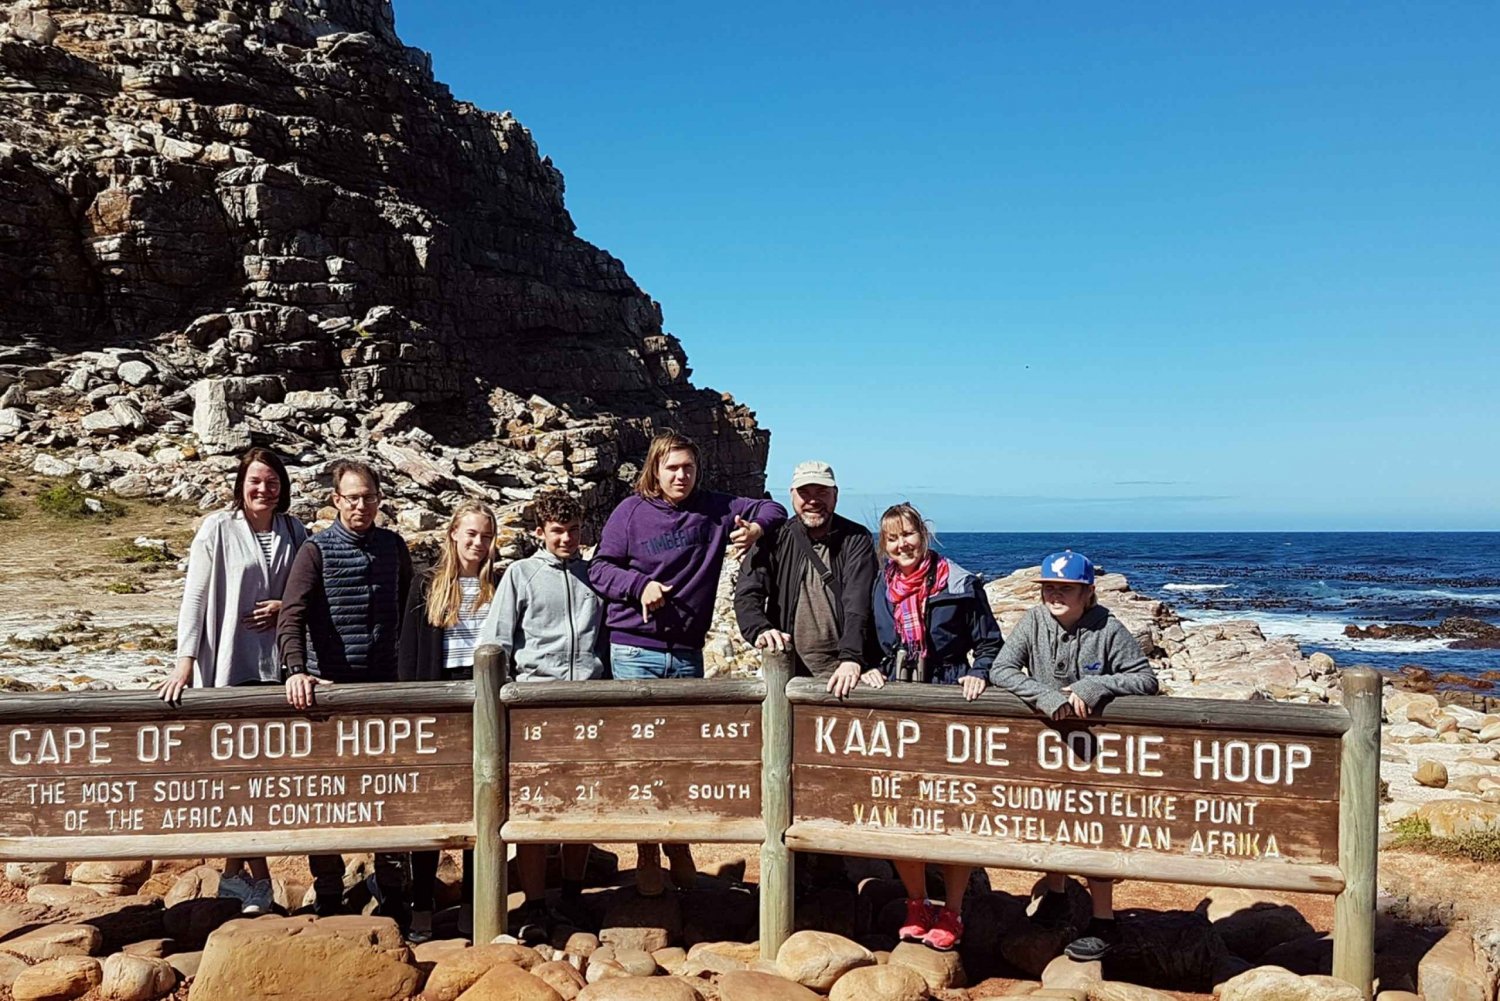 Privat guidet tur på Cape-halvøen